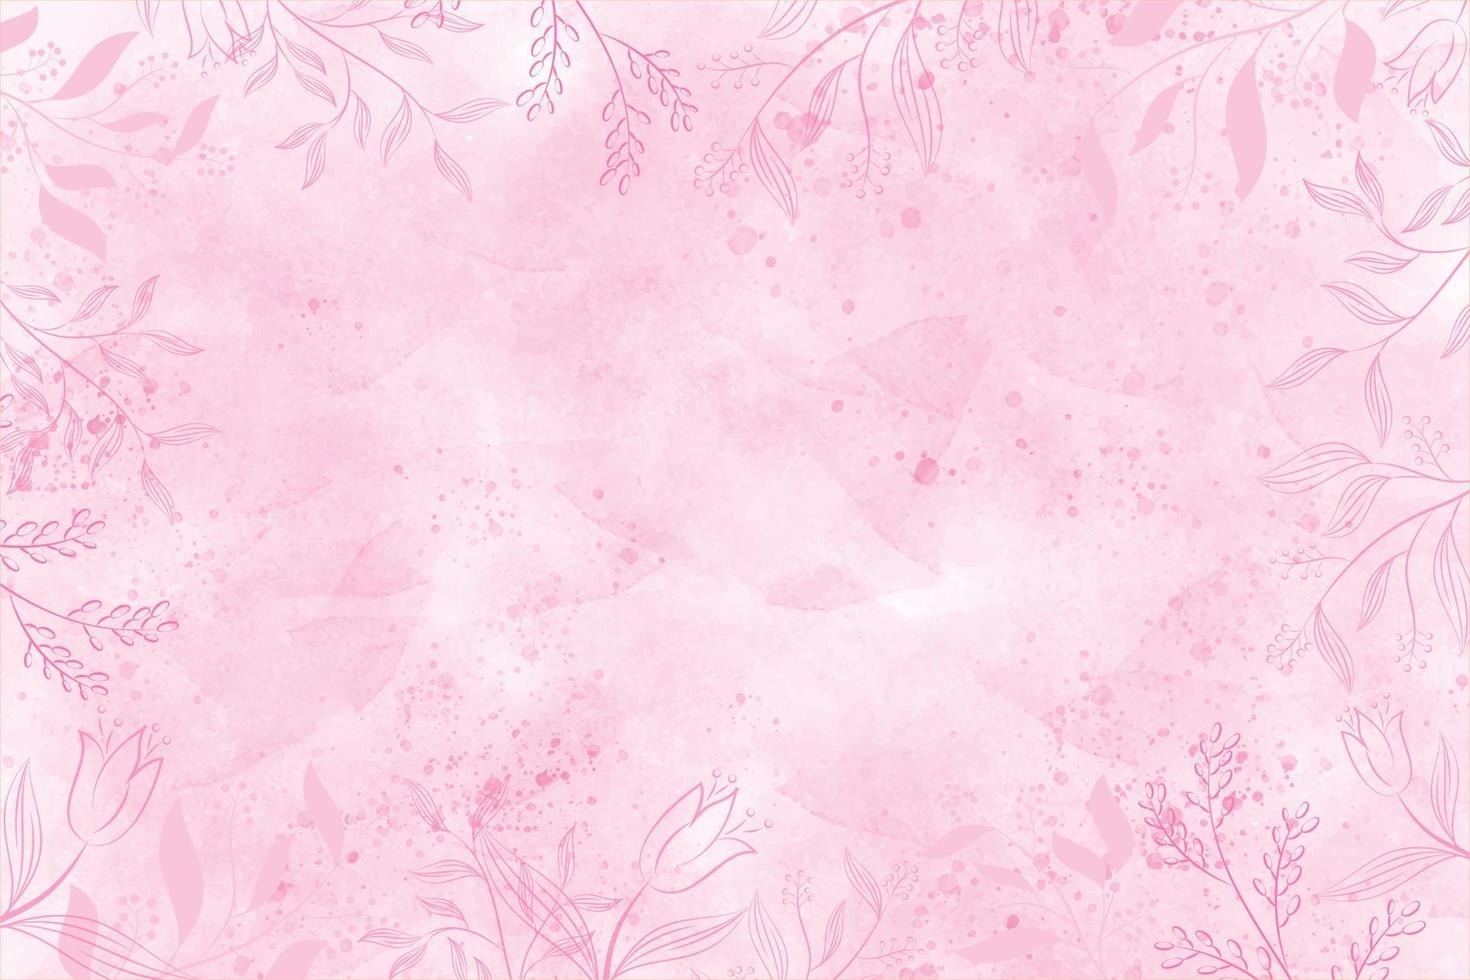 blanco antecedentes acuarela con floral resumen mojado mano dibujado para fondo de pantalla, tarjeta saludo, póster, diseño, cubrir, invitación. rosado color vector